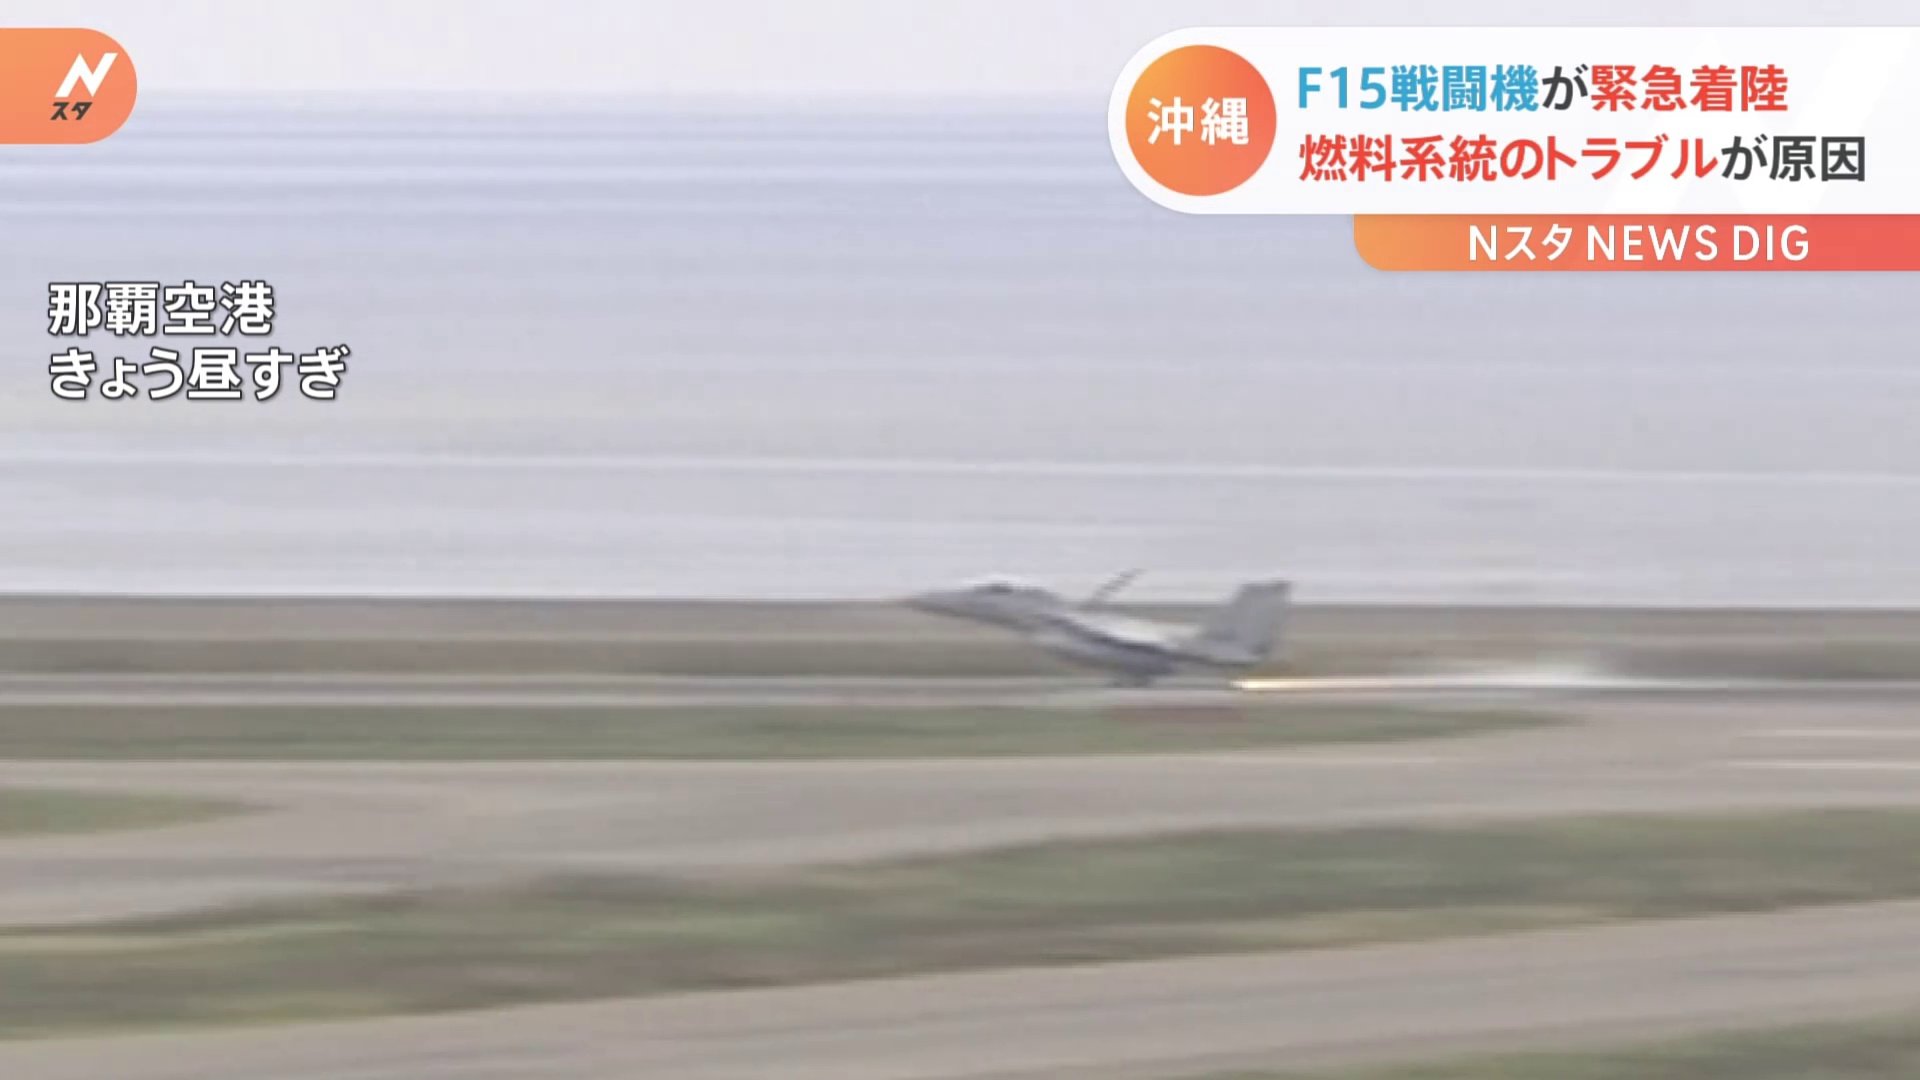 F15戦闘機が燃料系統のトラブルで緊急着陸　沖縄・那覇空港